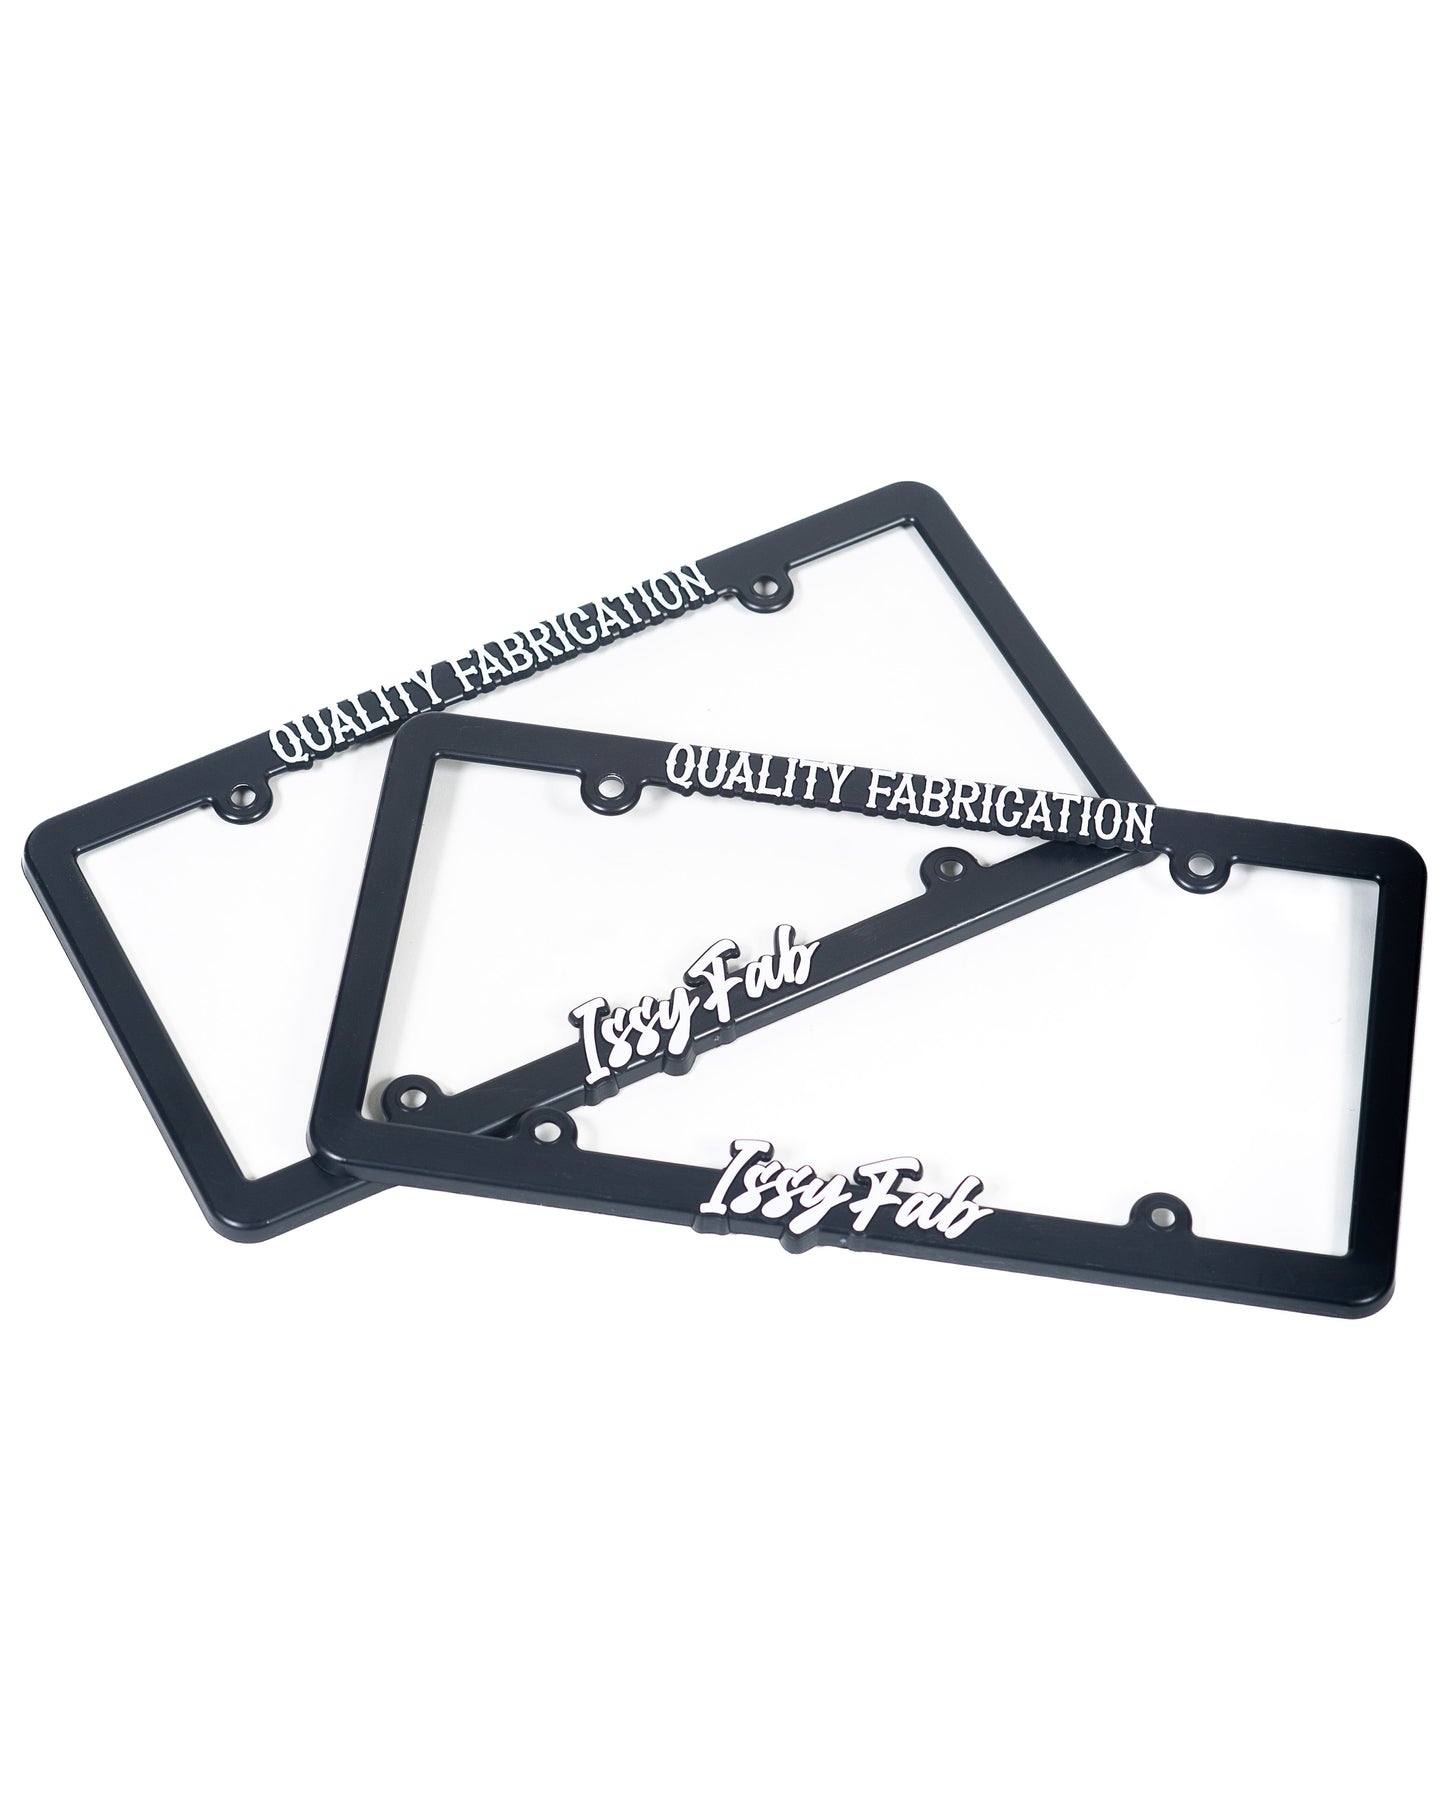 Issyfab Plate Frames